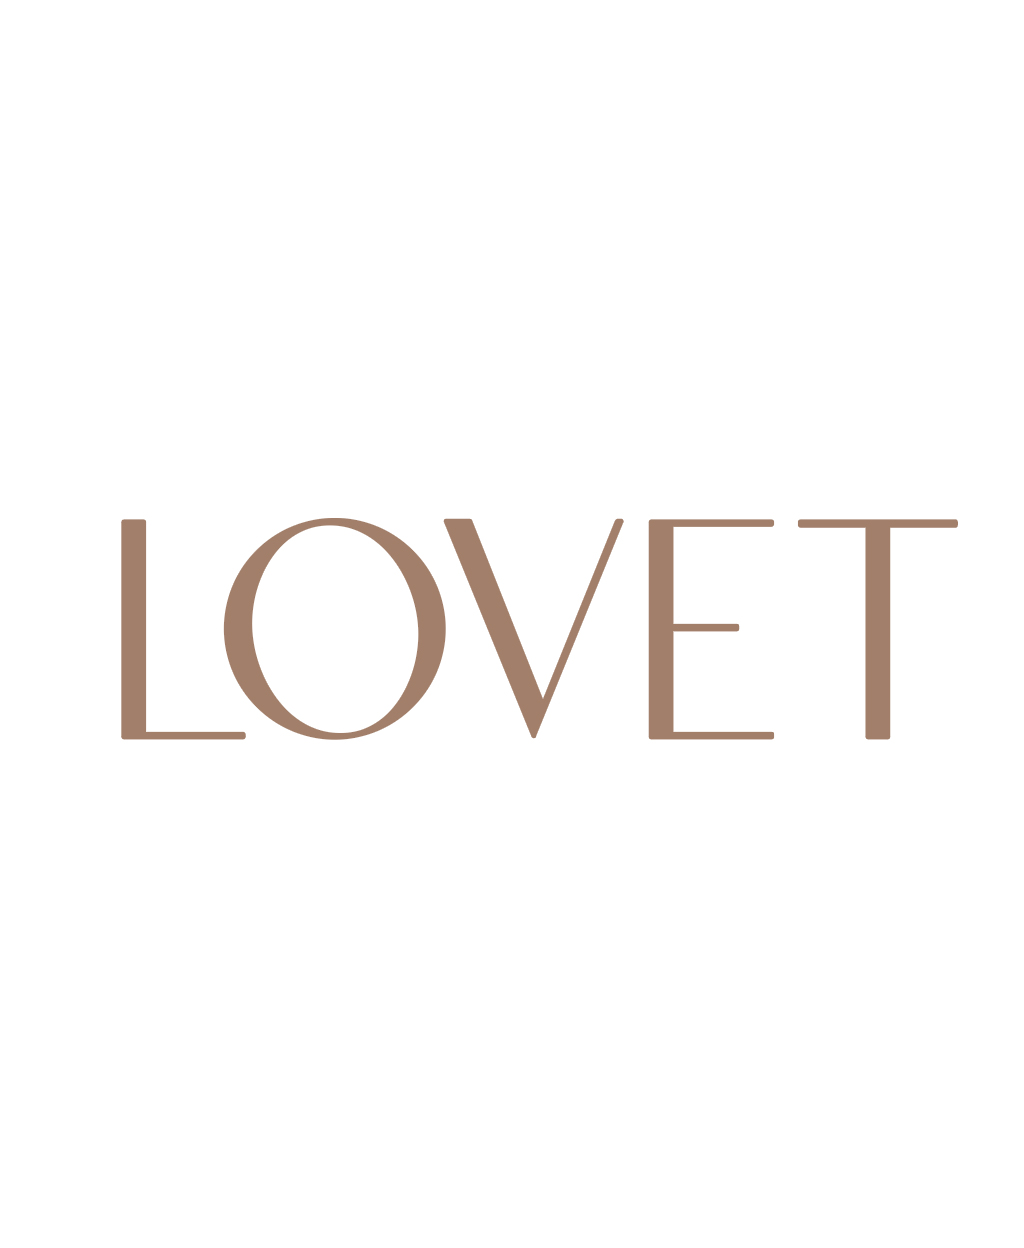 Company logo for Lovet (s) Pte. Ltd.